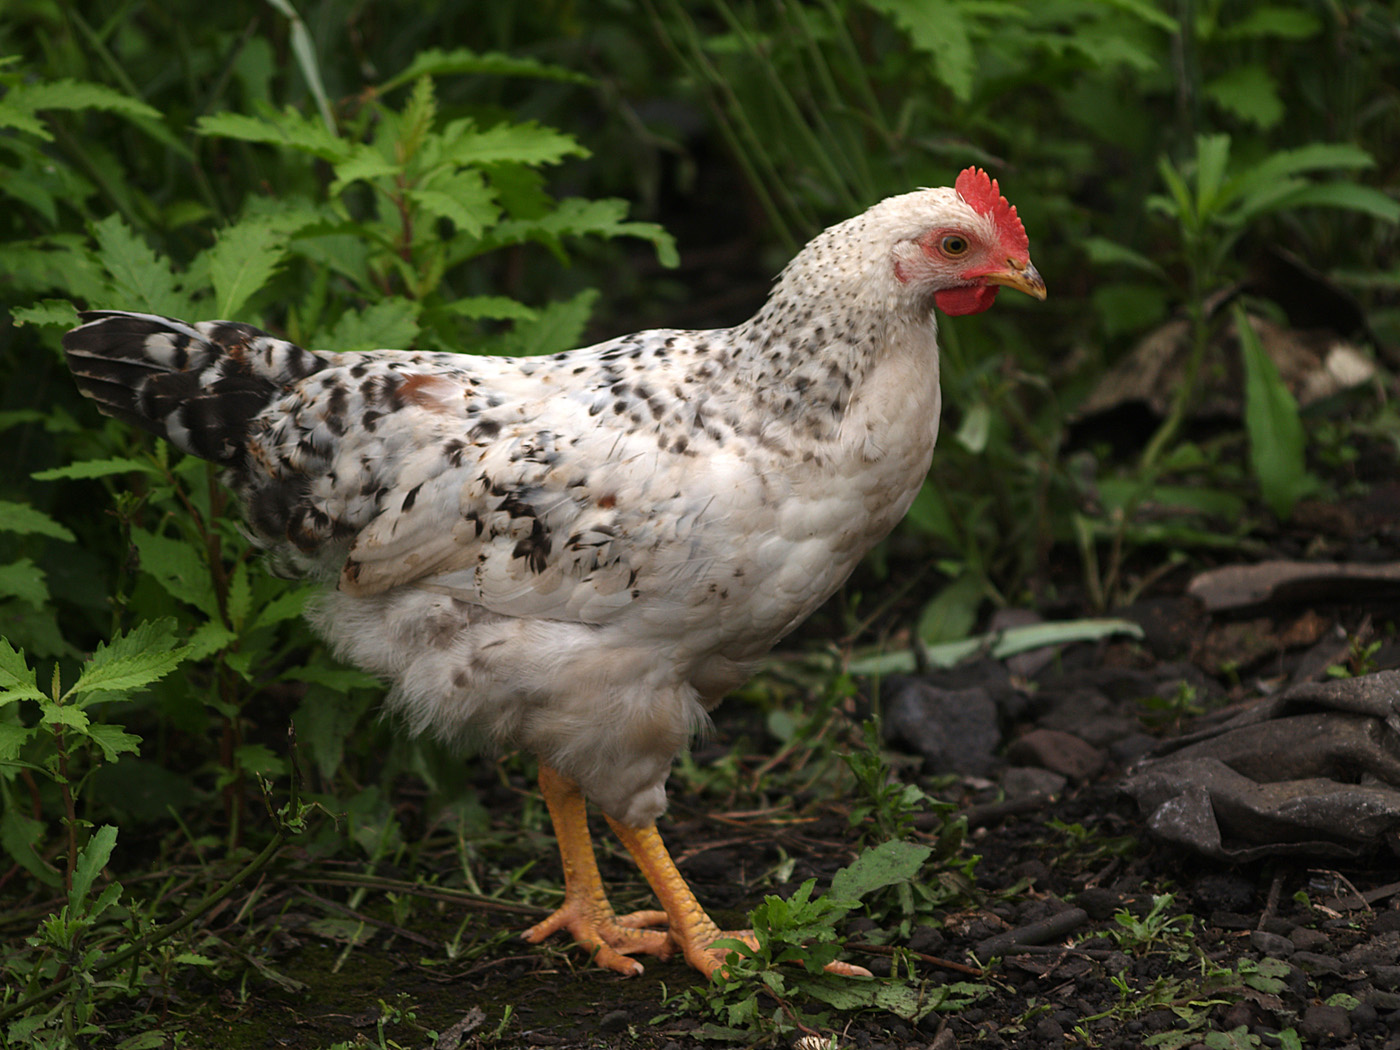 50-120天育成鸡优质引种 60-120日龄育成鸡低价销售 鹤壁 惠民青年鸡养殖中心-食品商务网